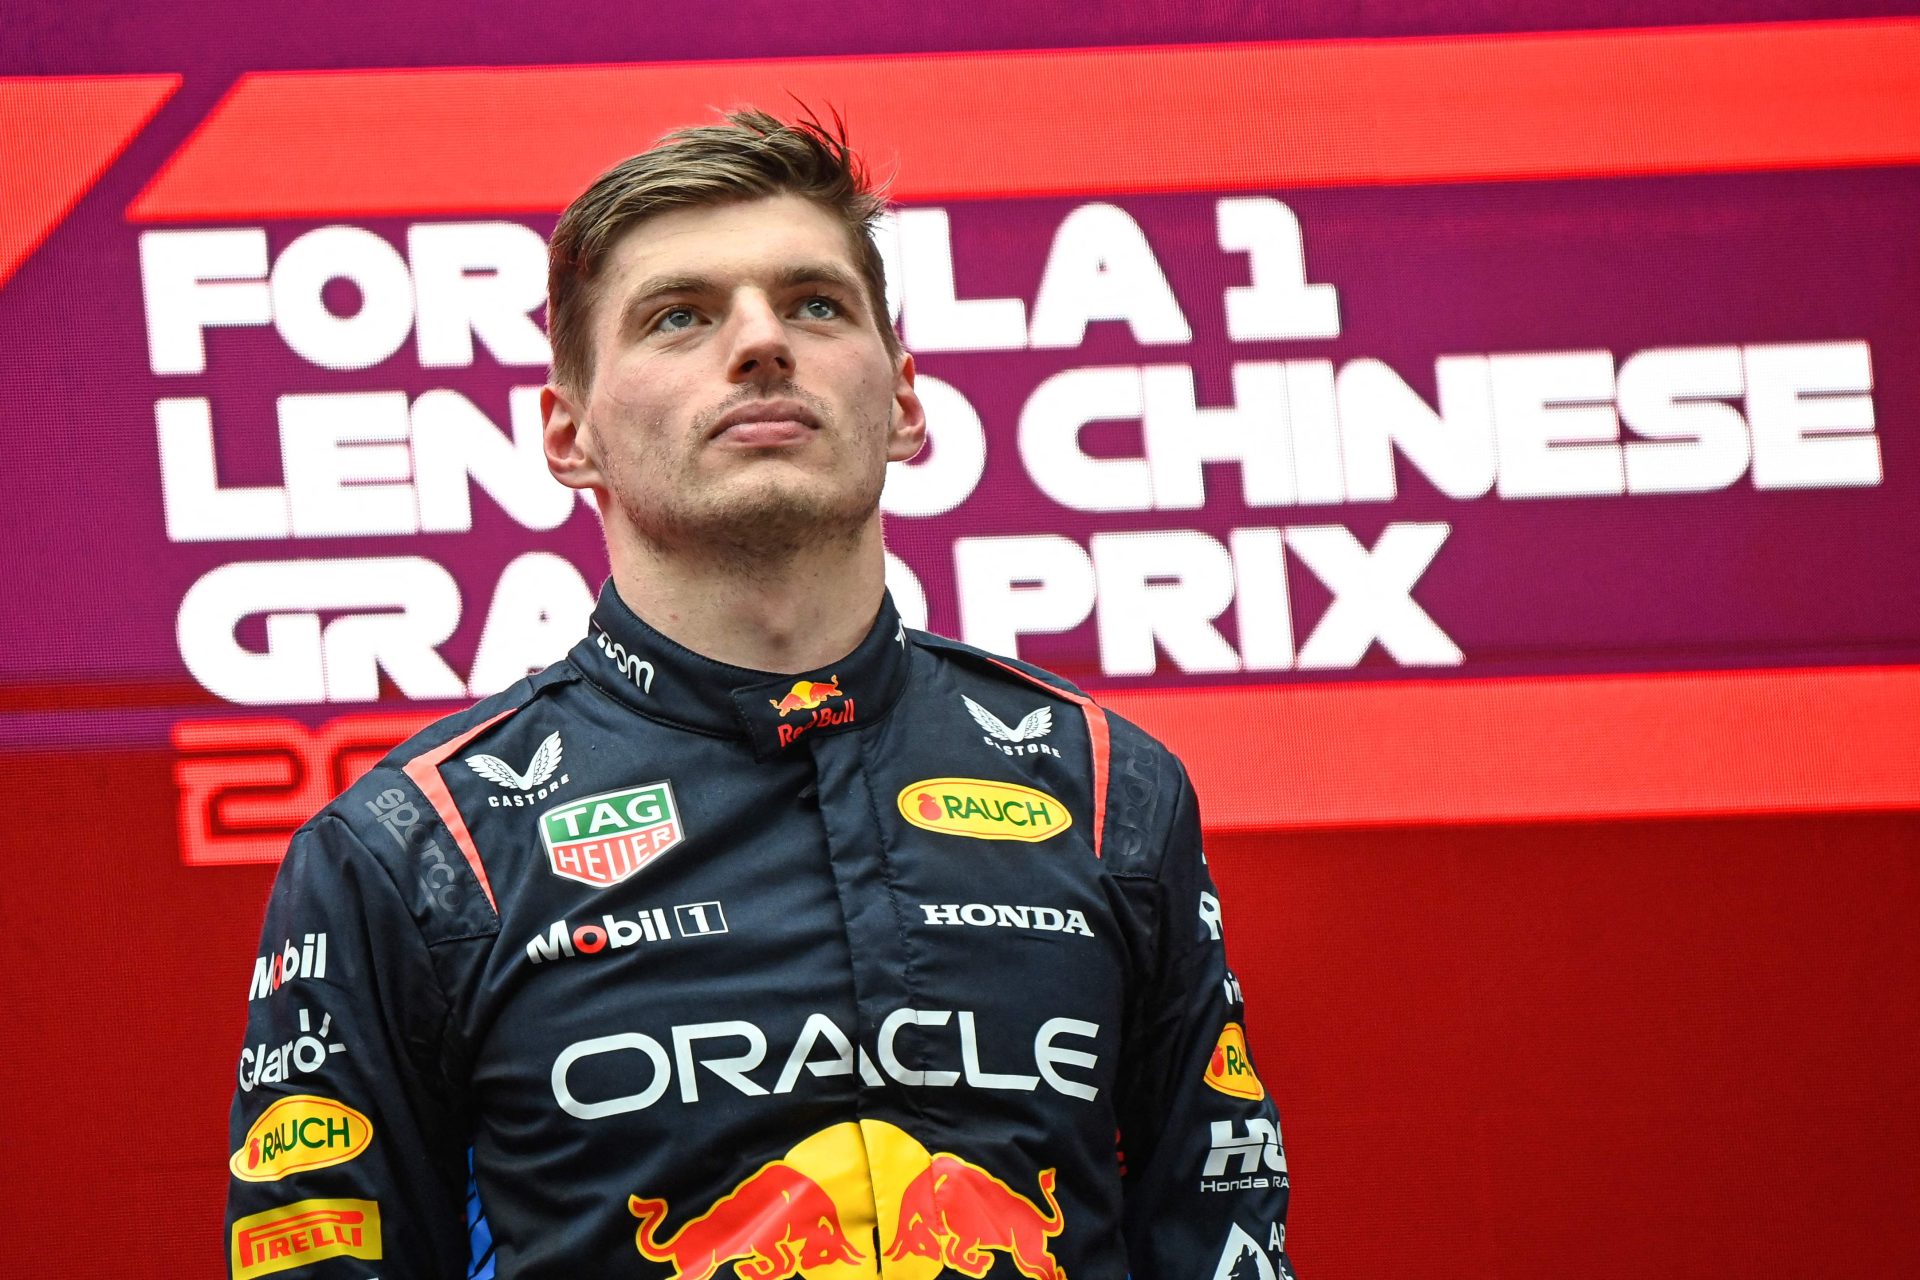 Fórmula 1. Verstappen a dobrar no fim de semana chinês